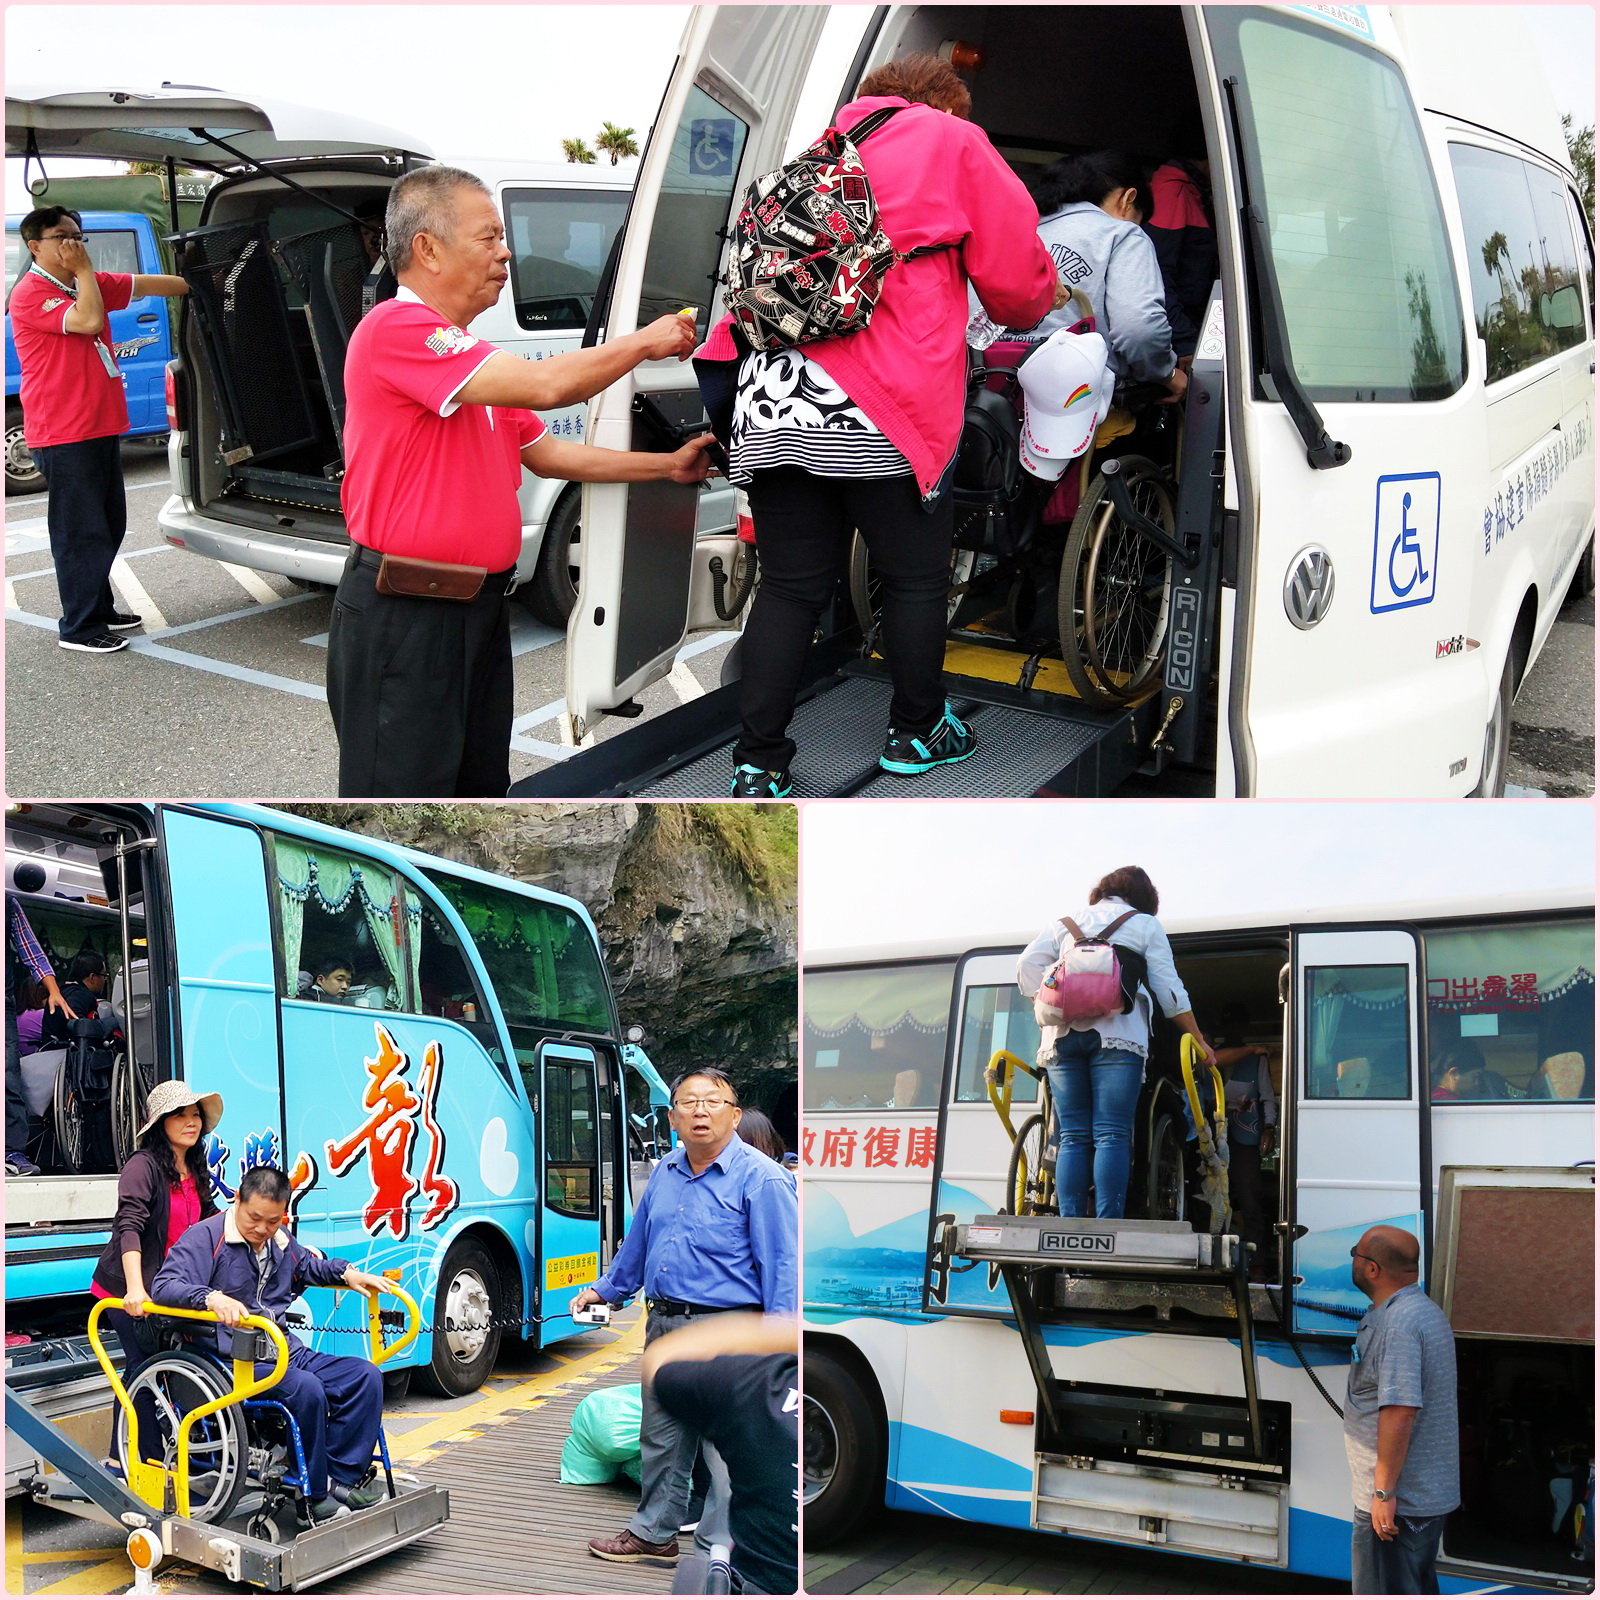 活動透過大、小復康巴士接送，讓會員們坐著輪椅一樣能花蓮走透透。